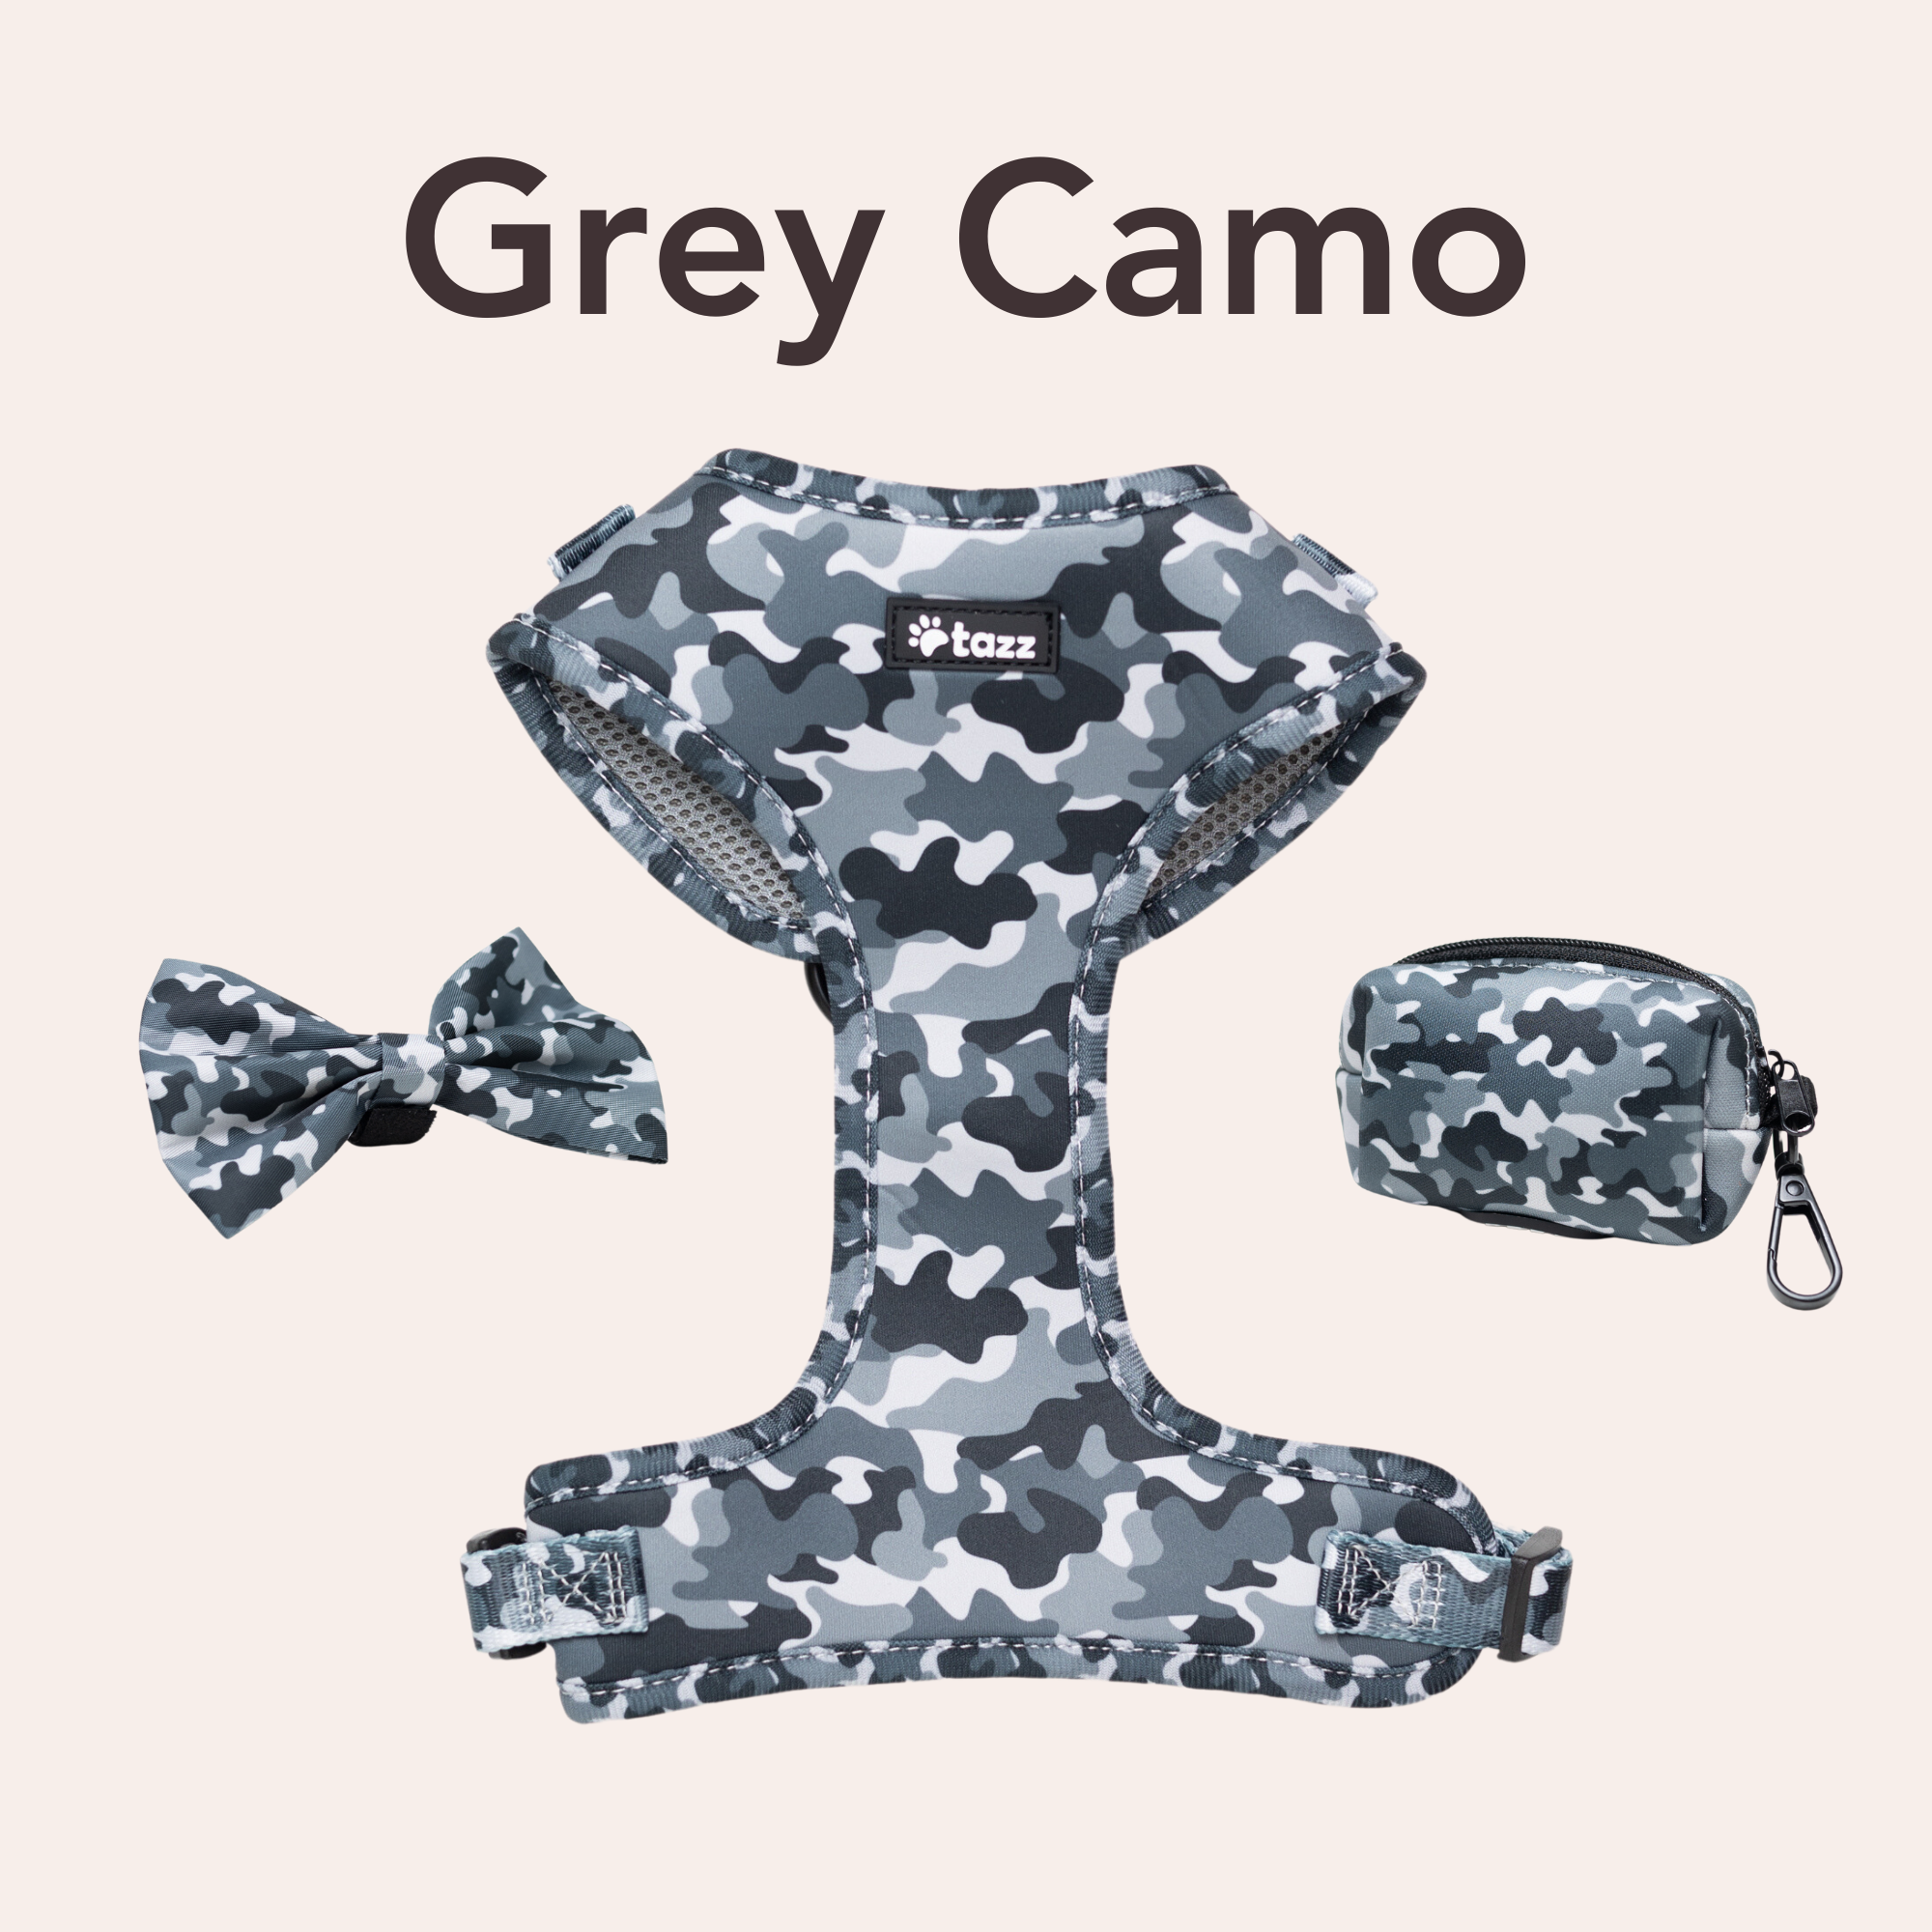 Grey Camo